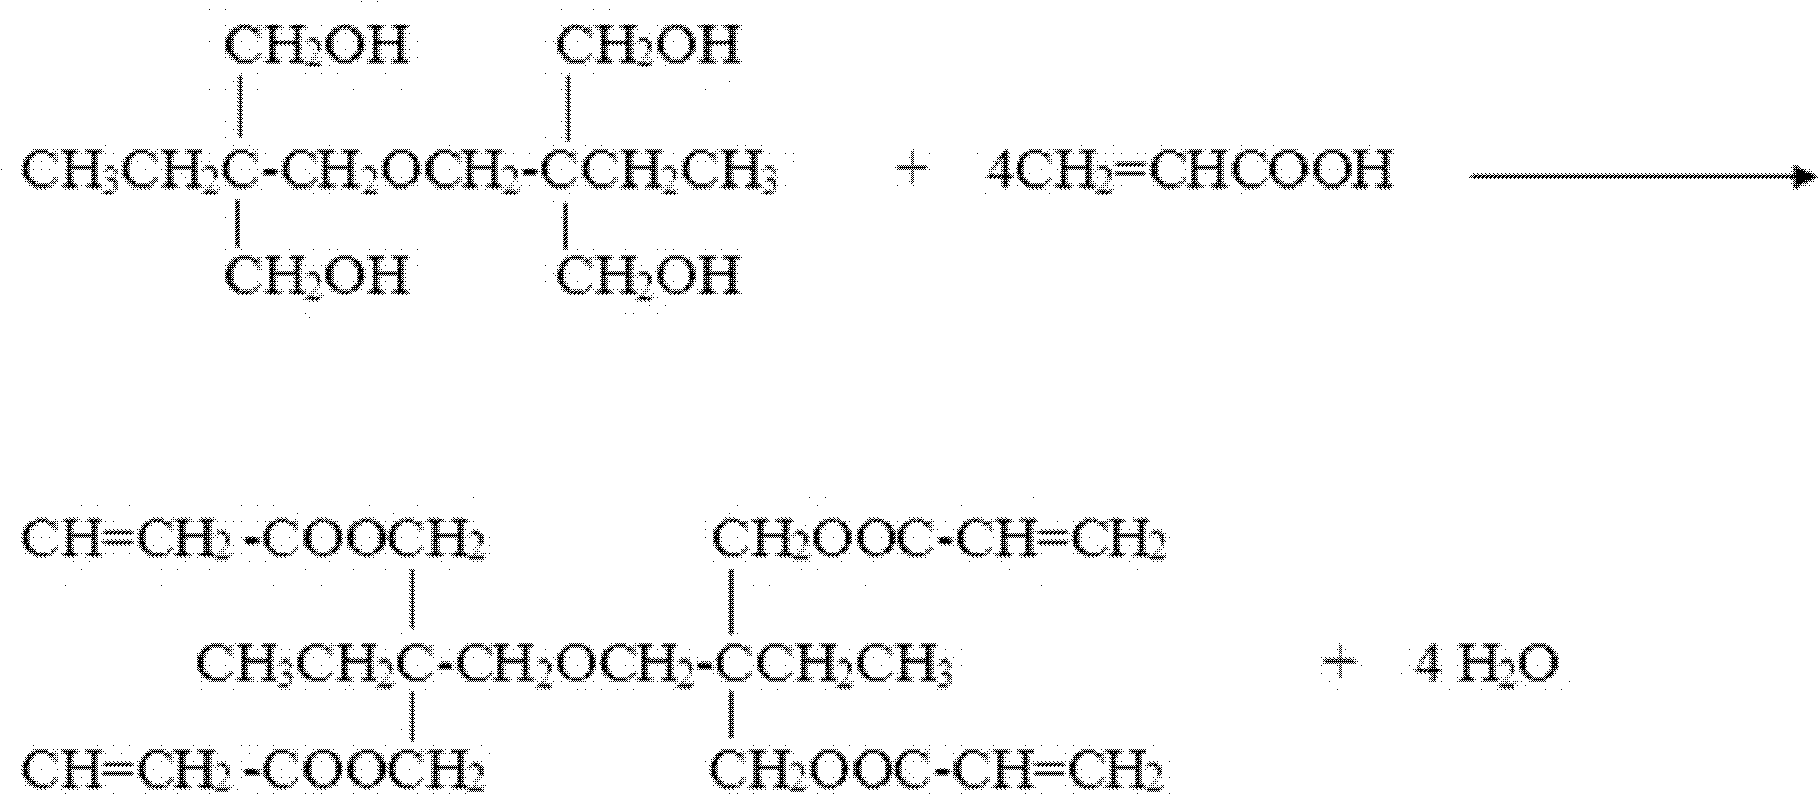 Cleaning production method for di-trimethylolpropane tetra-acrylic ester or pentaerythritol tetra-acrylic ester